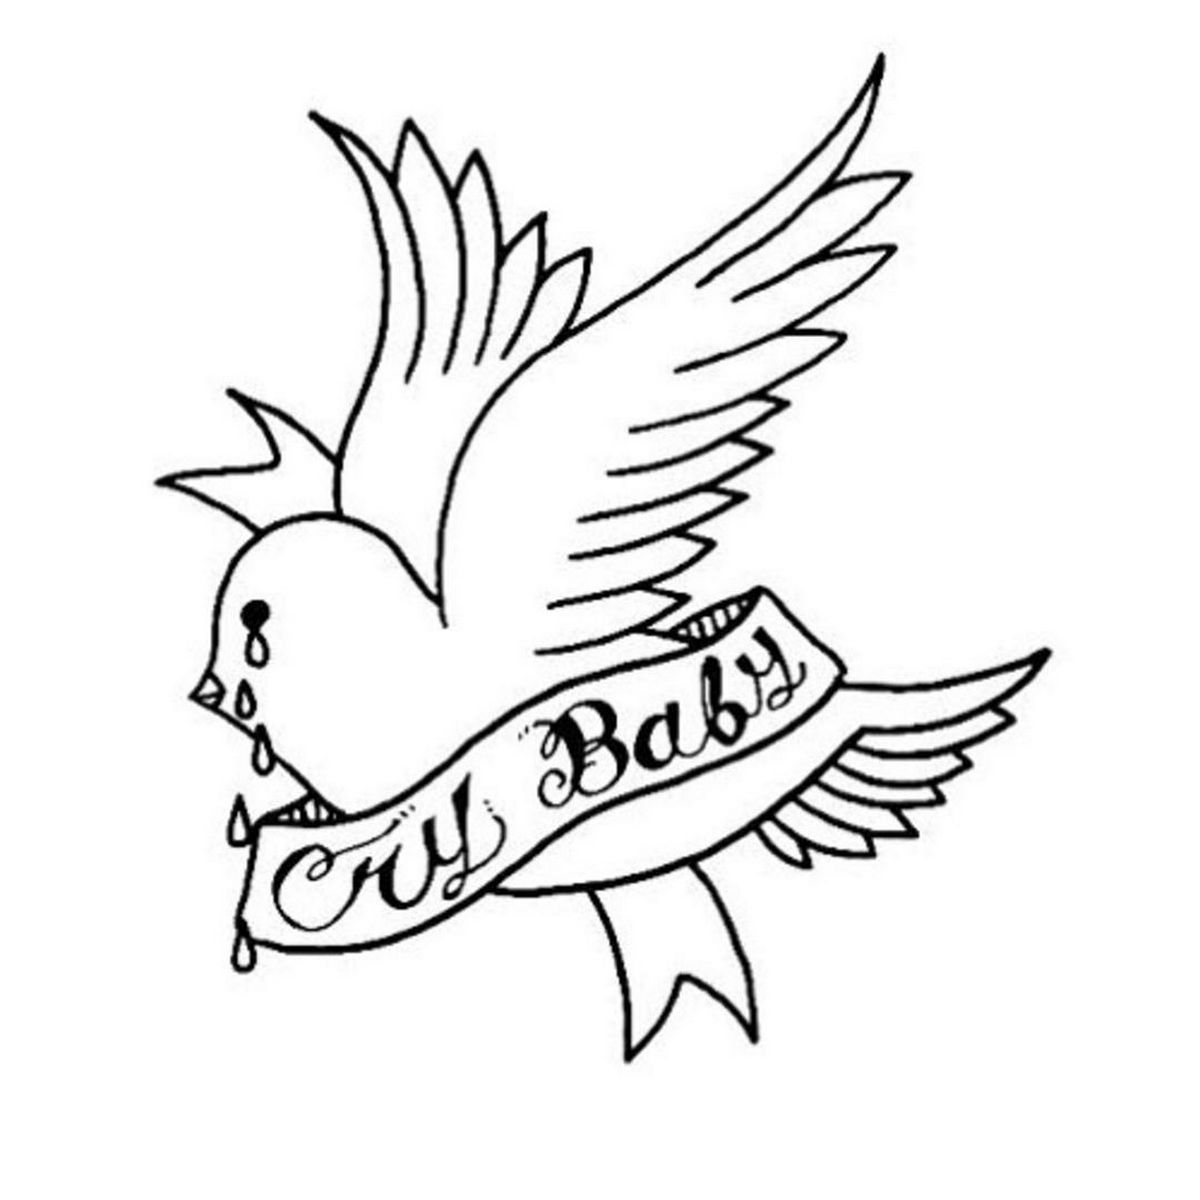 Naqshad Sawir Cool - Lil Peep Crybaby Tattoo